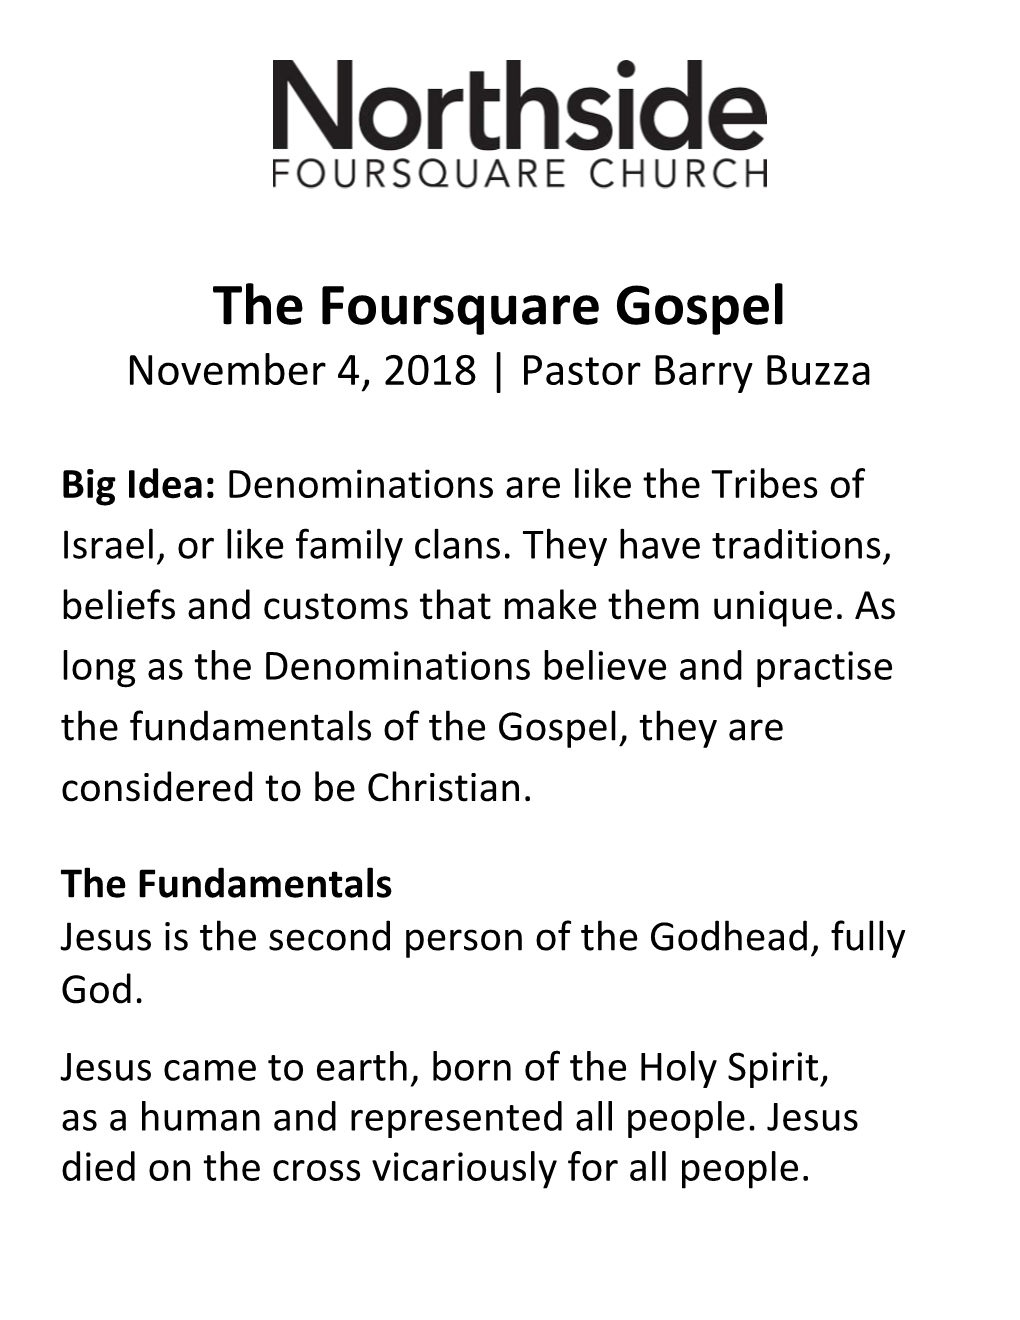 The Foursquare Gospel November 4, 2018 | Pastor Barry Buzza